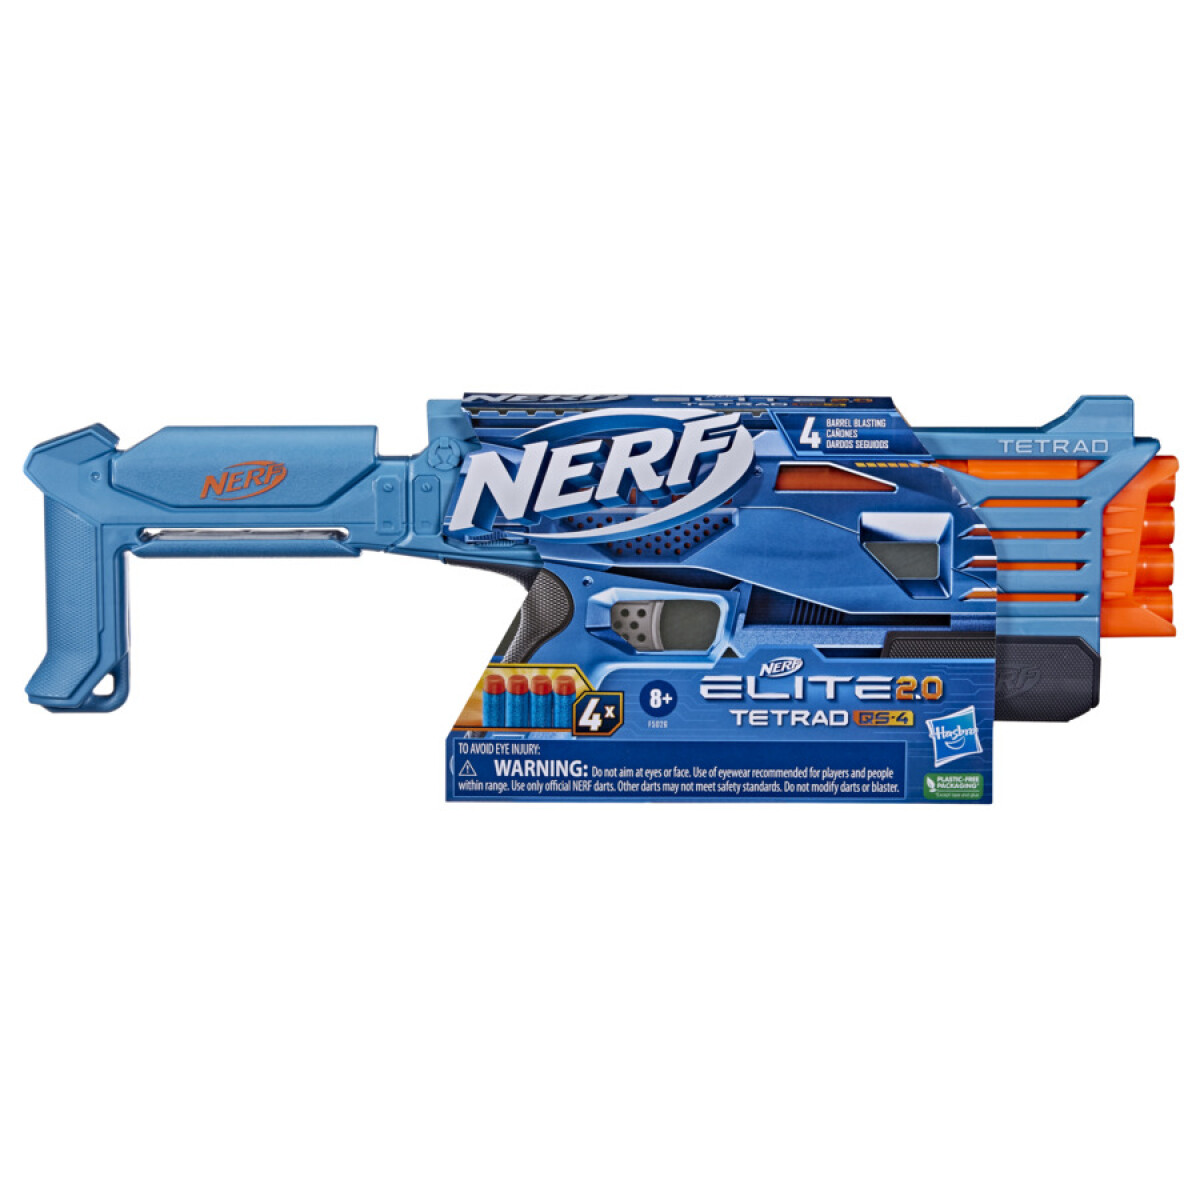 Pistola Lanzador Nerf Elite 2.0 Tetrad QS-4 - 001 